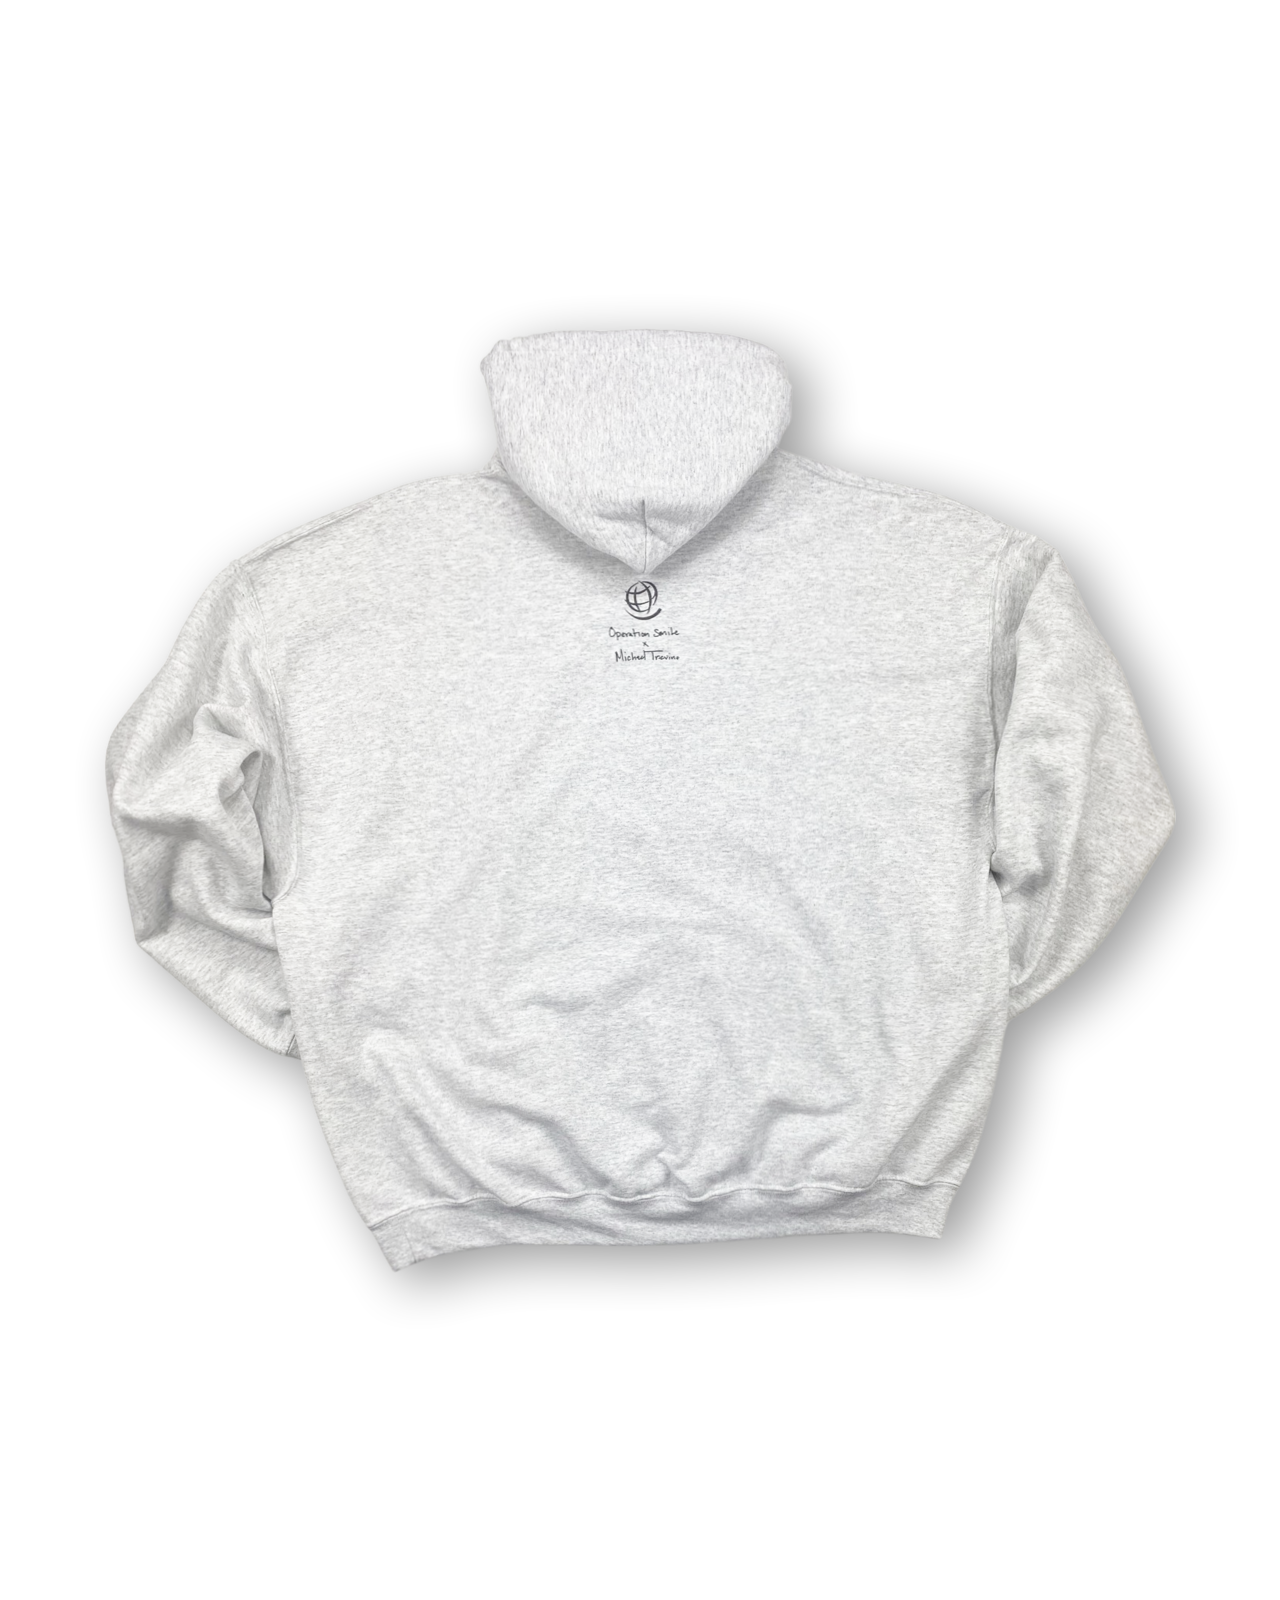 sweatshirt-everything4.png